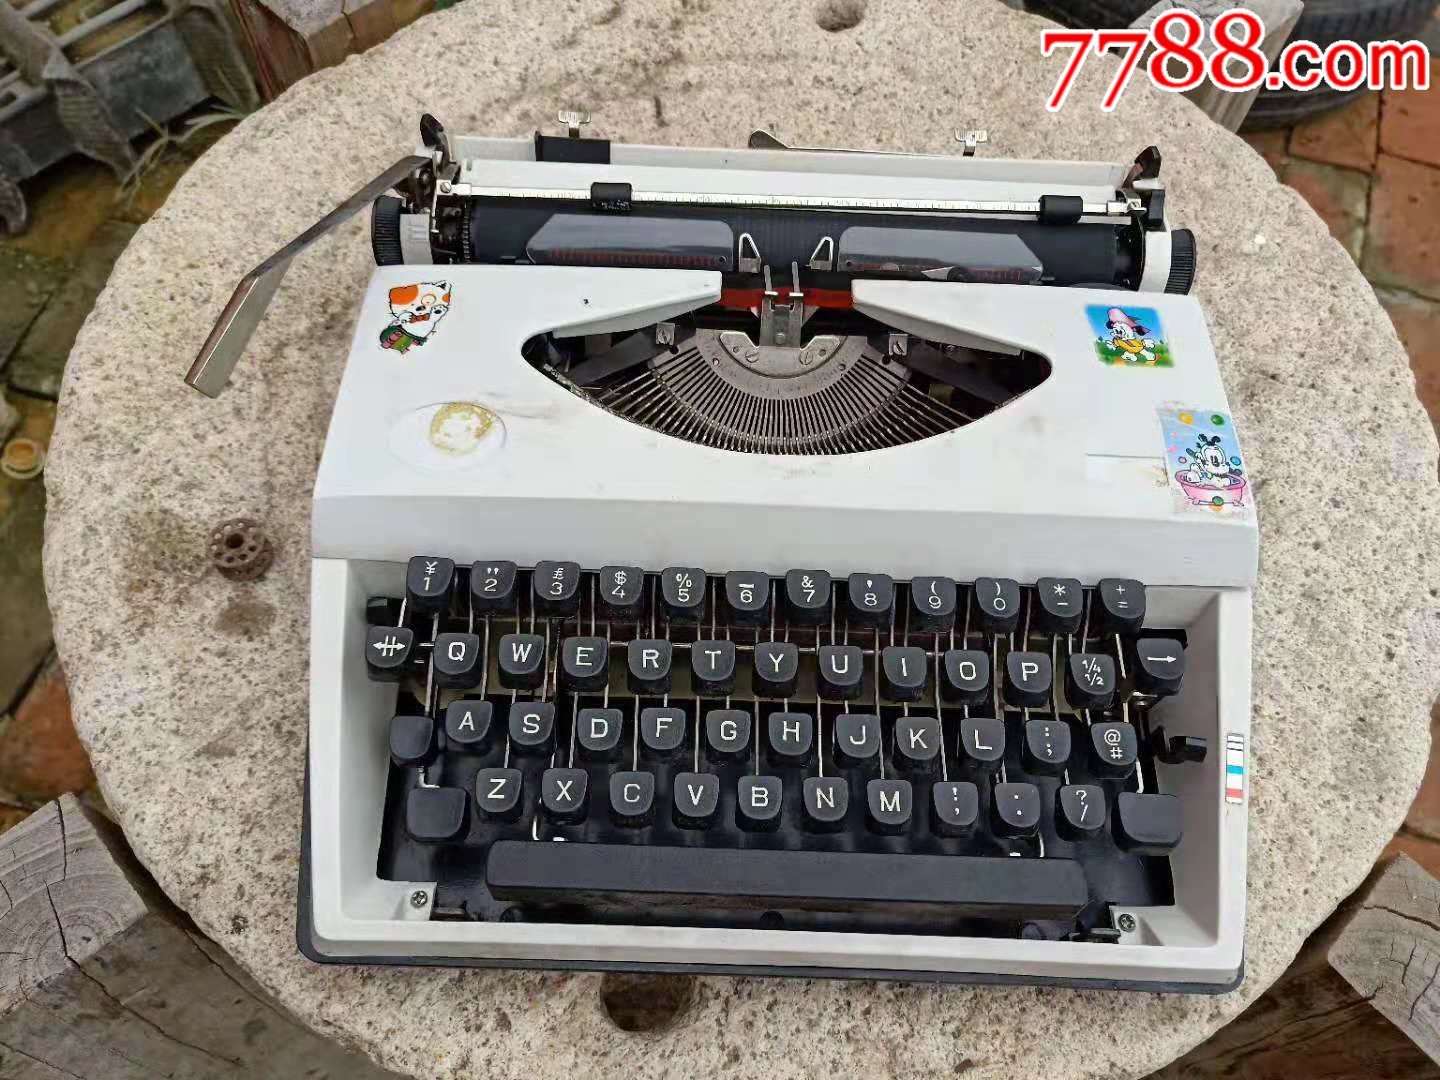 上海飞鱼牌手提打字机正常使用品相完好